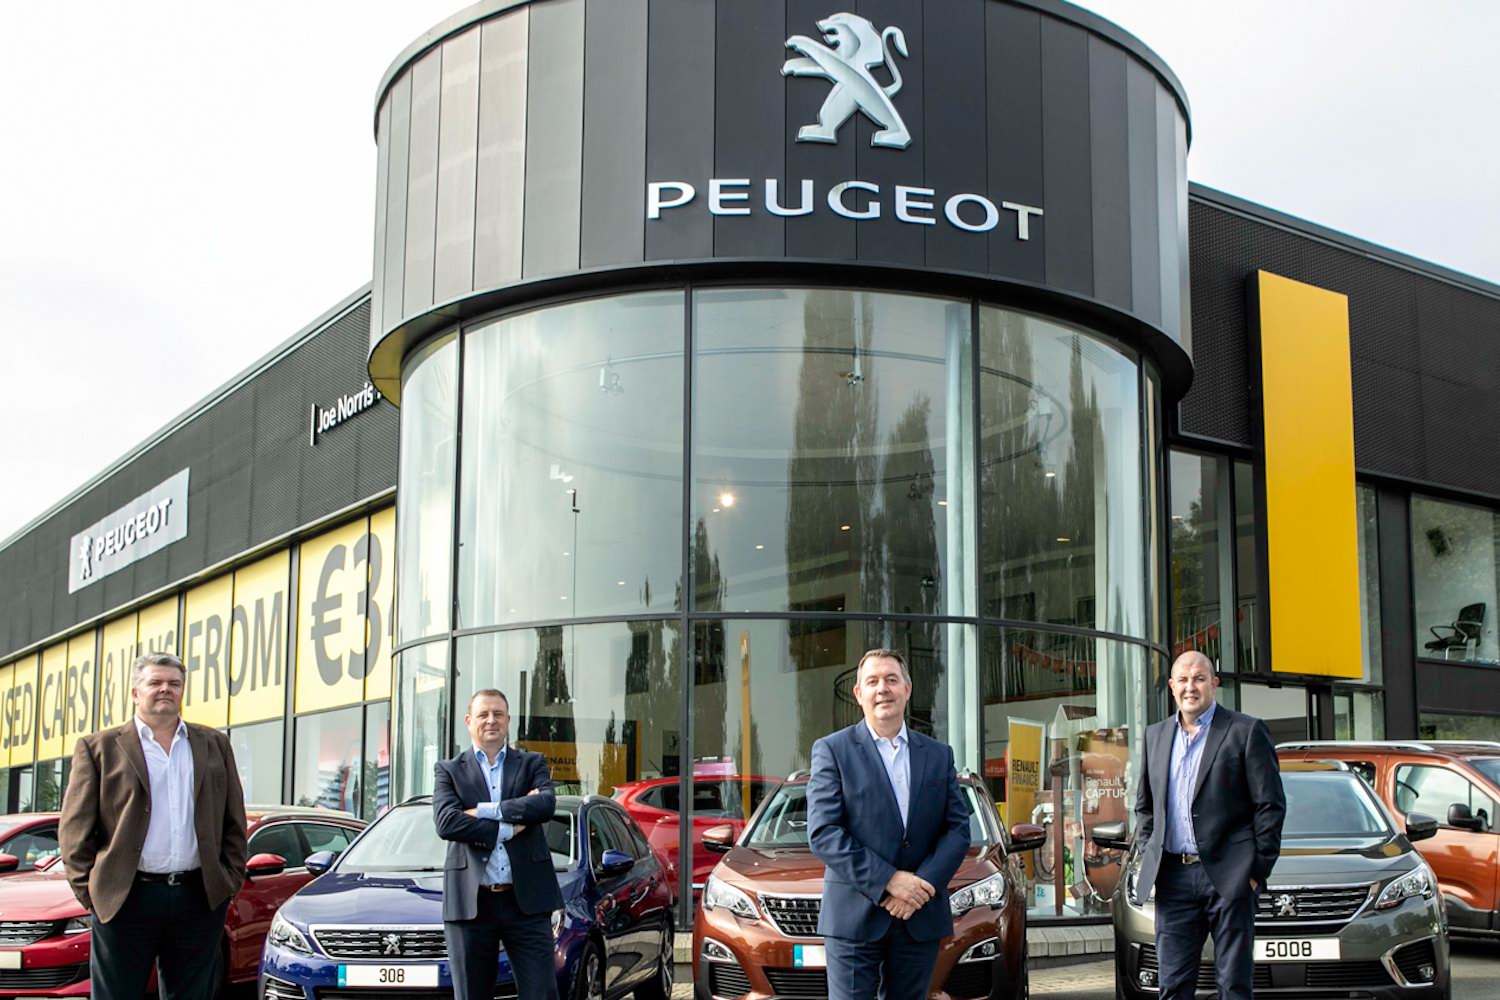 Car Industry News | Joe Norris Motors joins the Peugeot dealer network | CompleteCar.ie